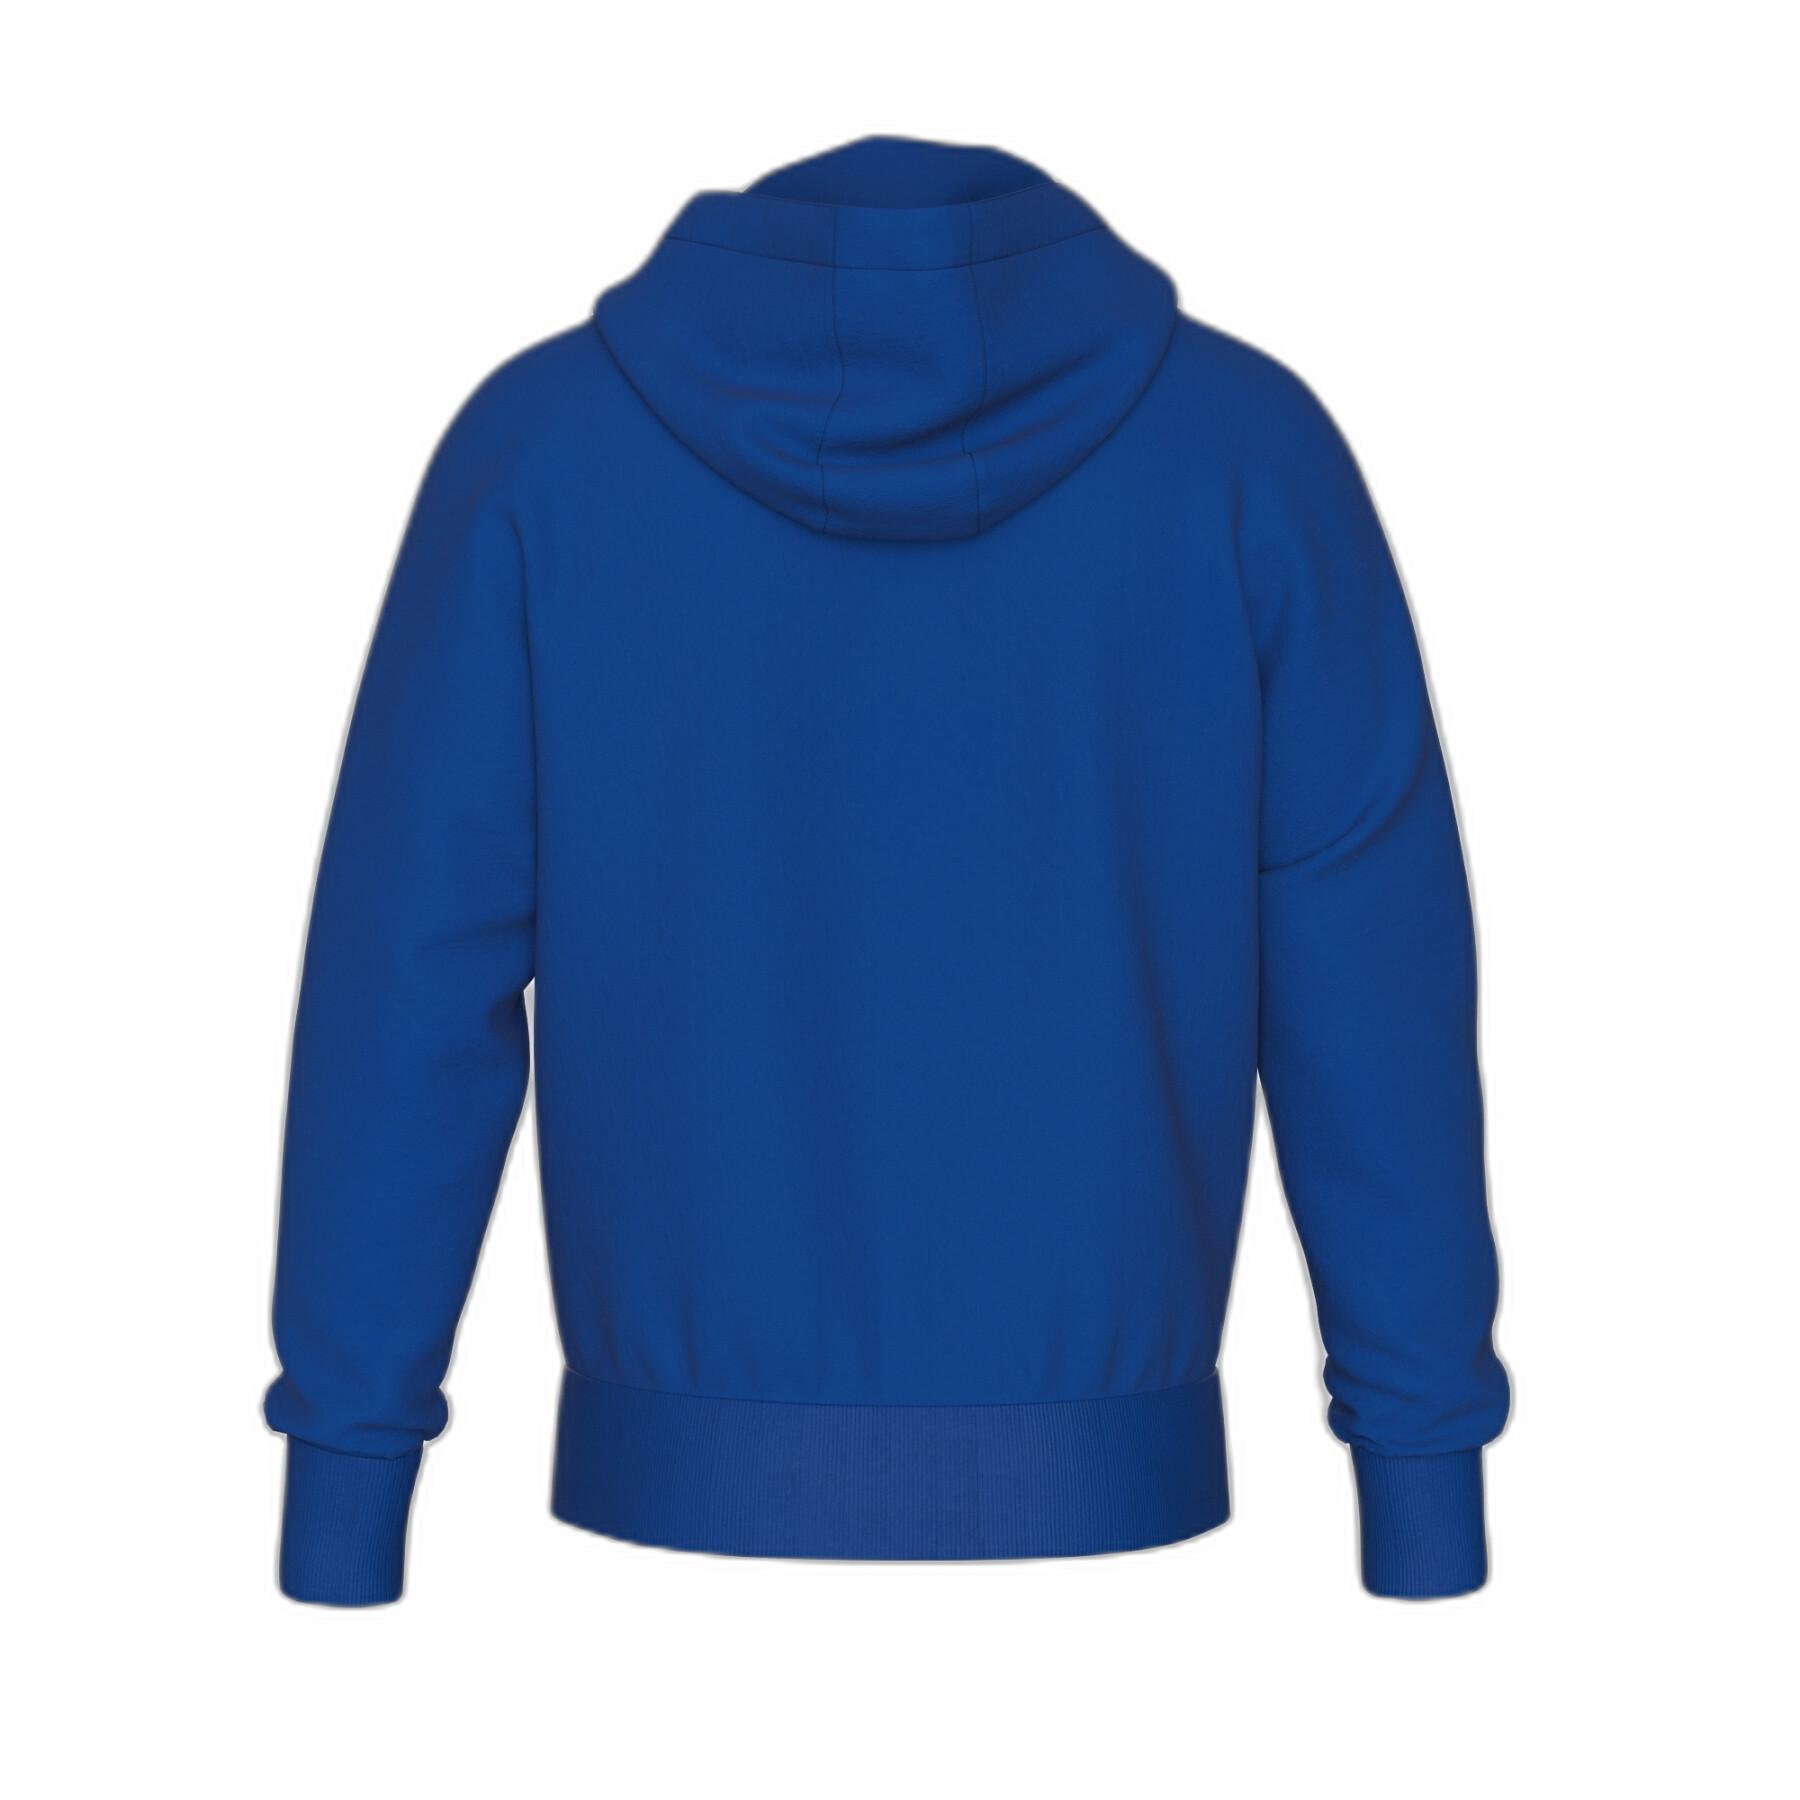 Hooded sweatshirt with zipper Errea Essential 29